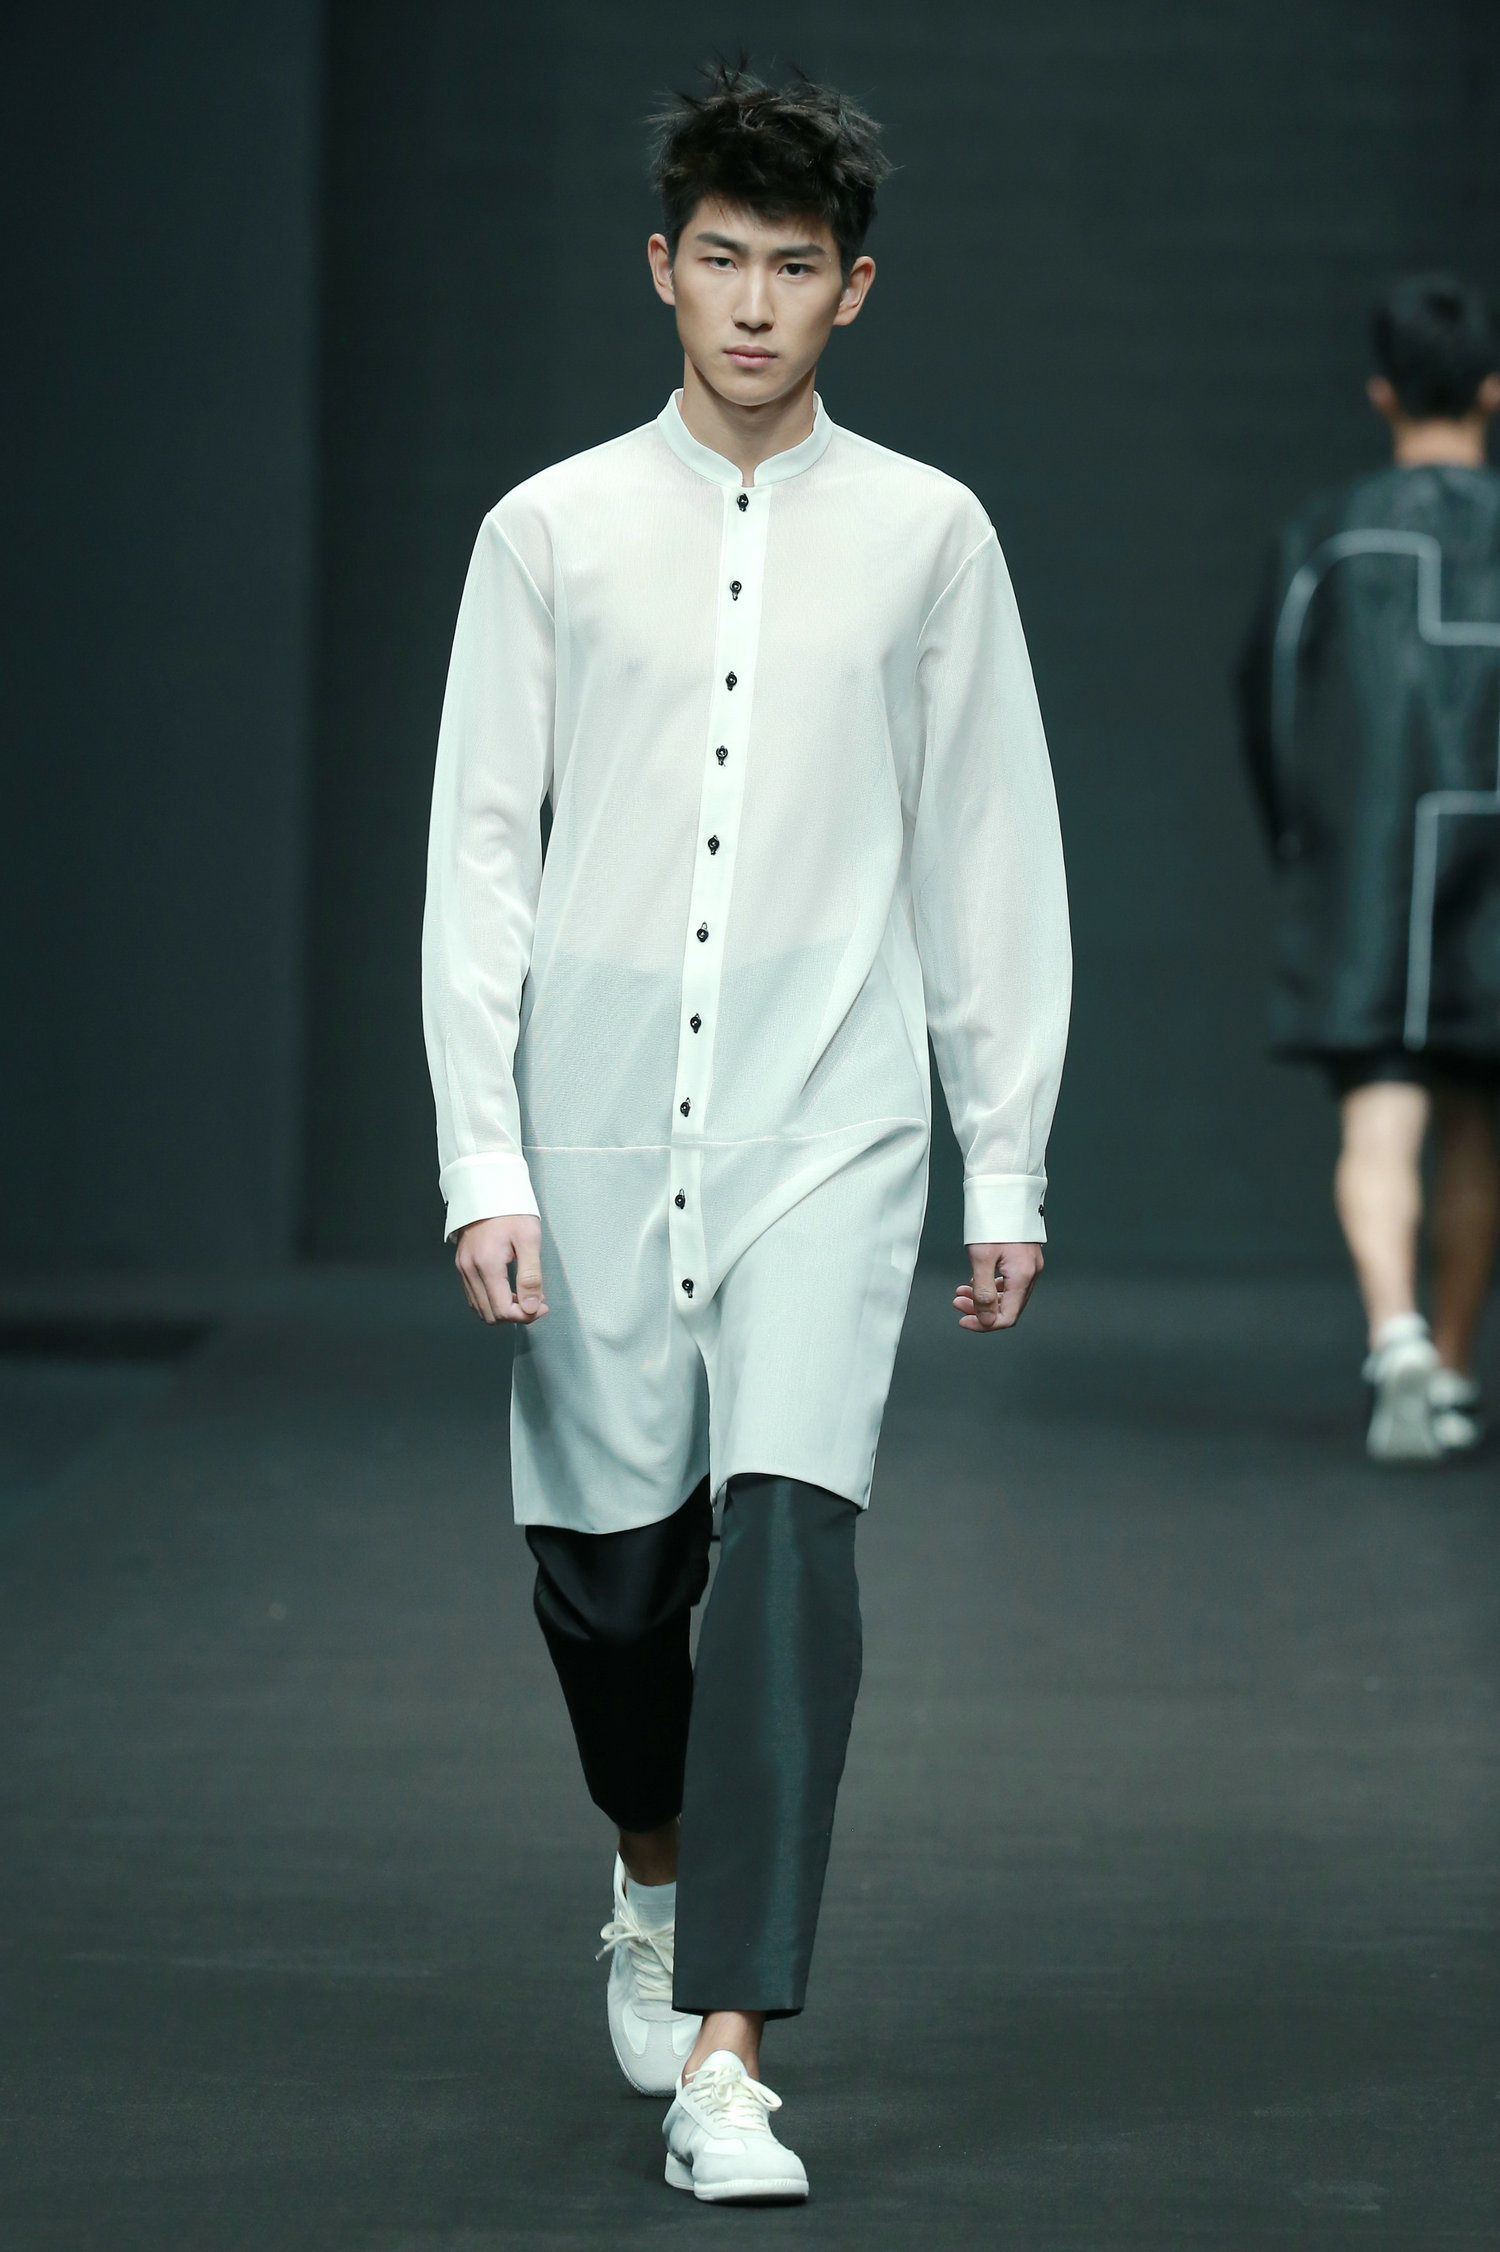 2016春夏系列中国国际时装周 SIVICO·乔丹&WhiteFog·余倩时装发布